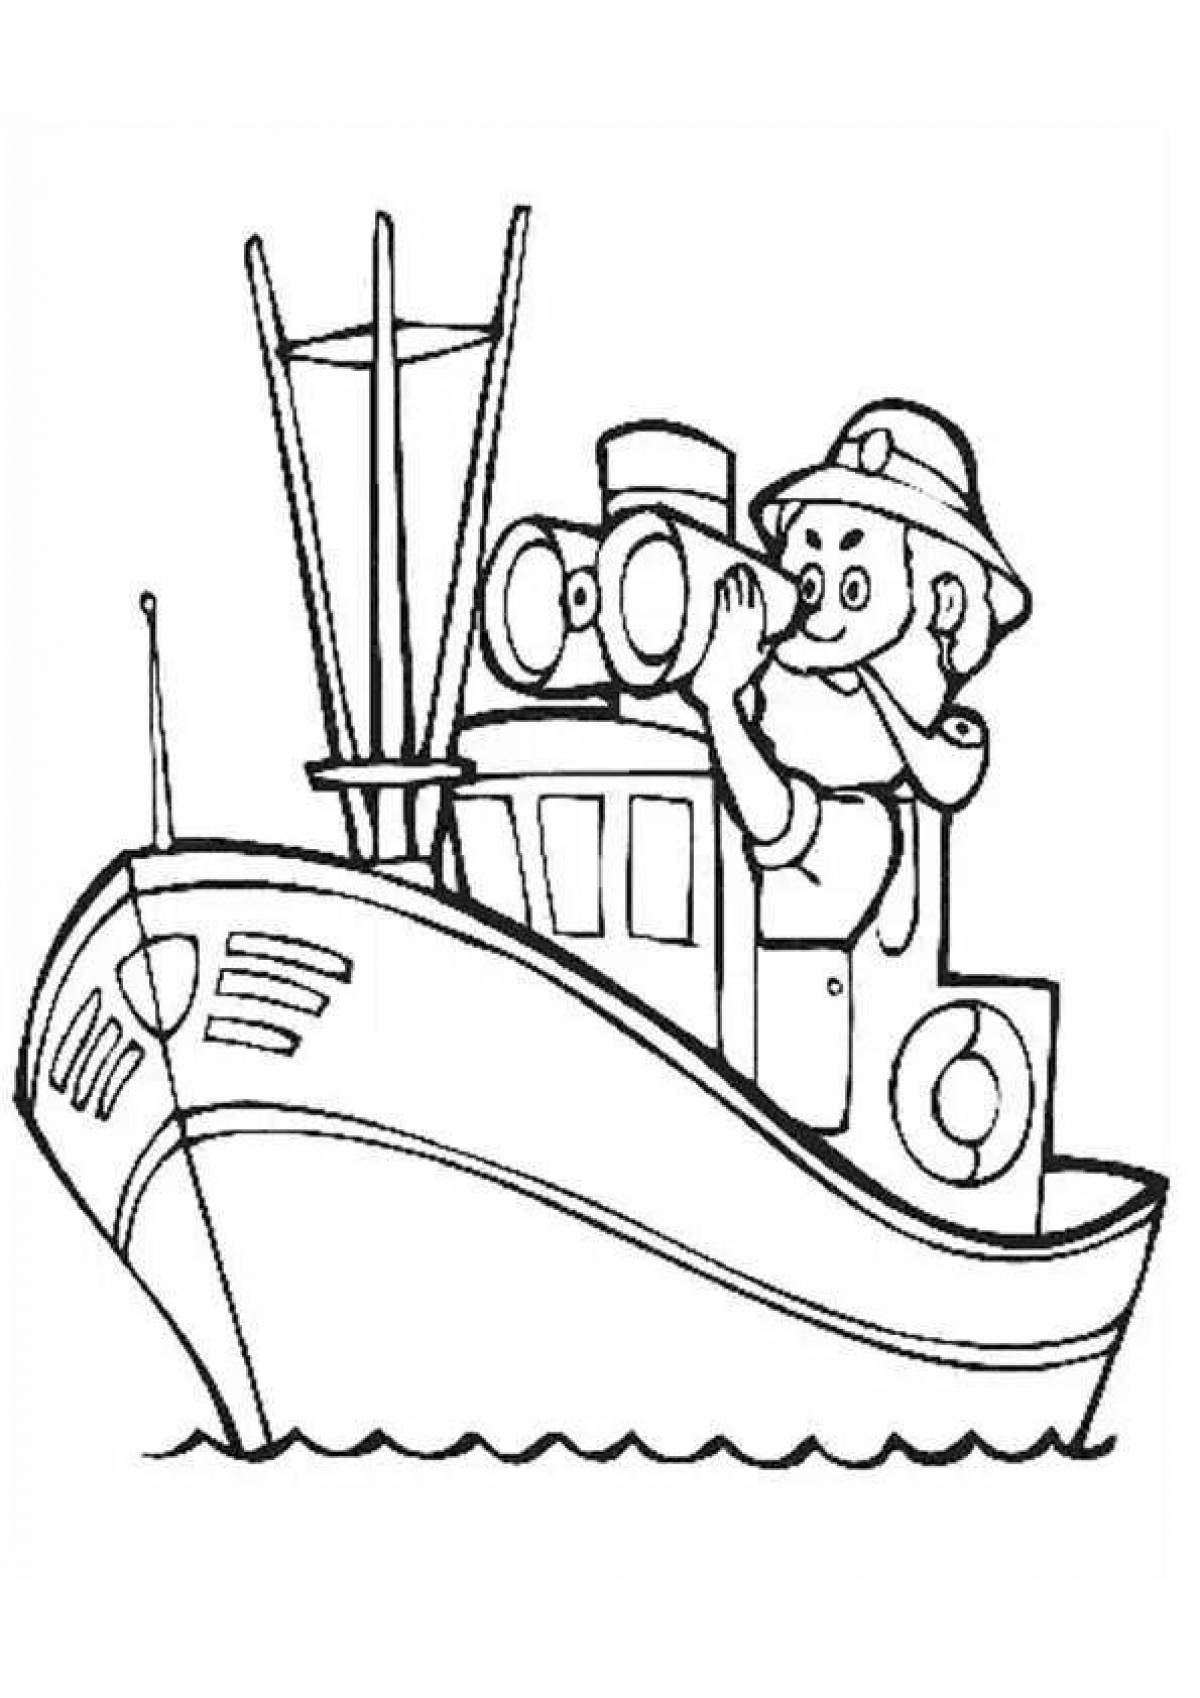 Раскраска Капитан корабля для детей